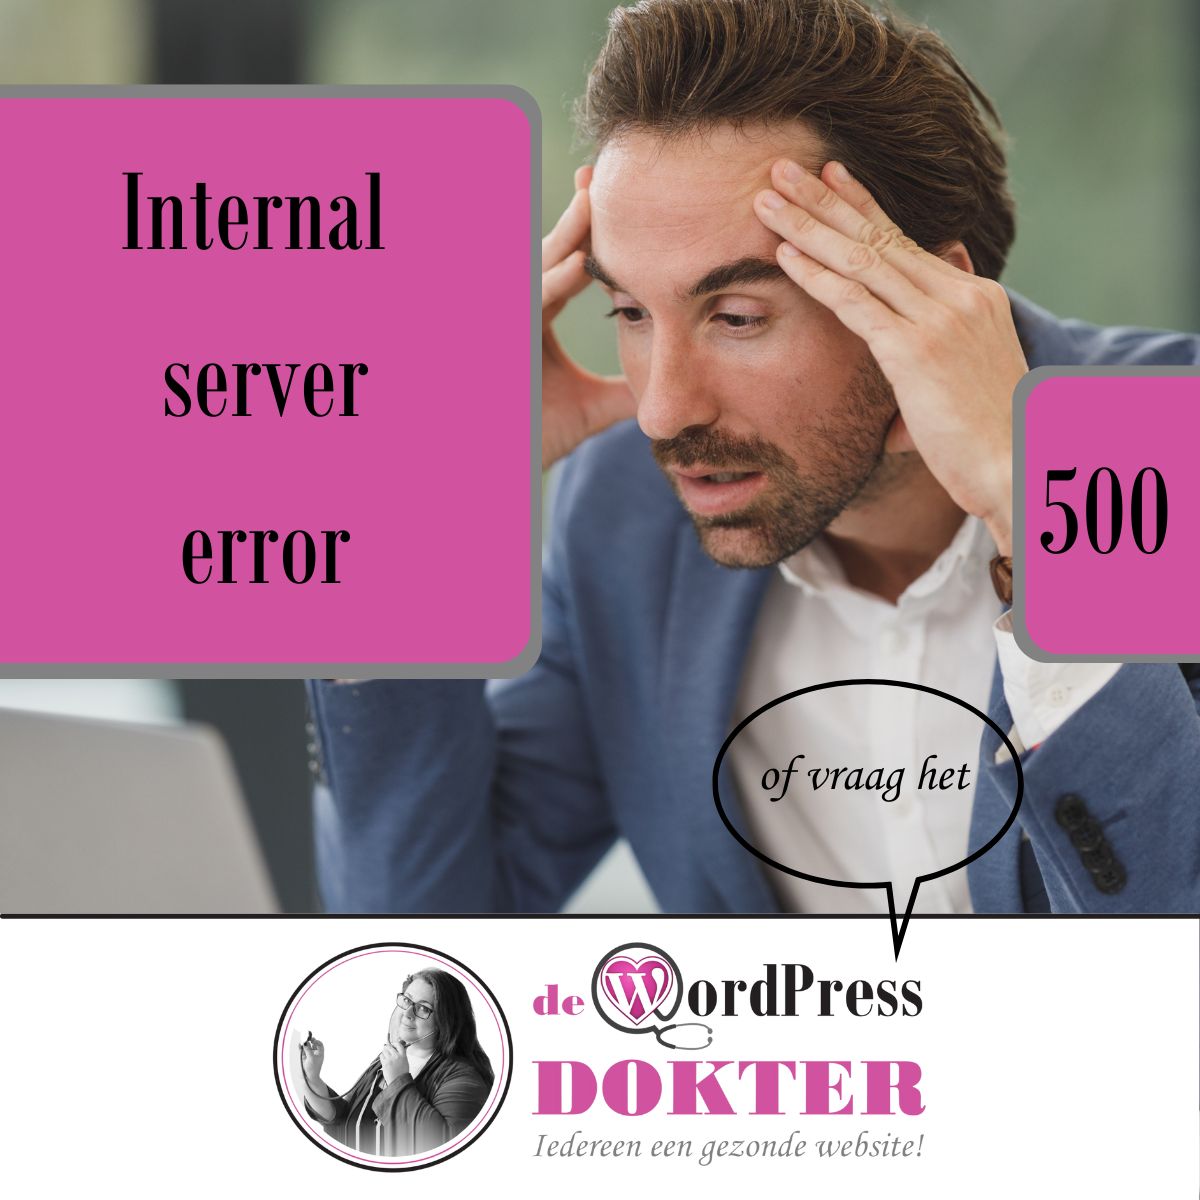 Internal server error (500) oplossen